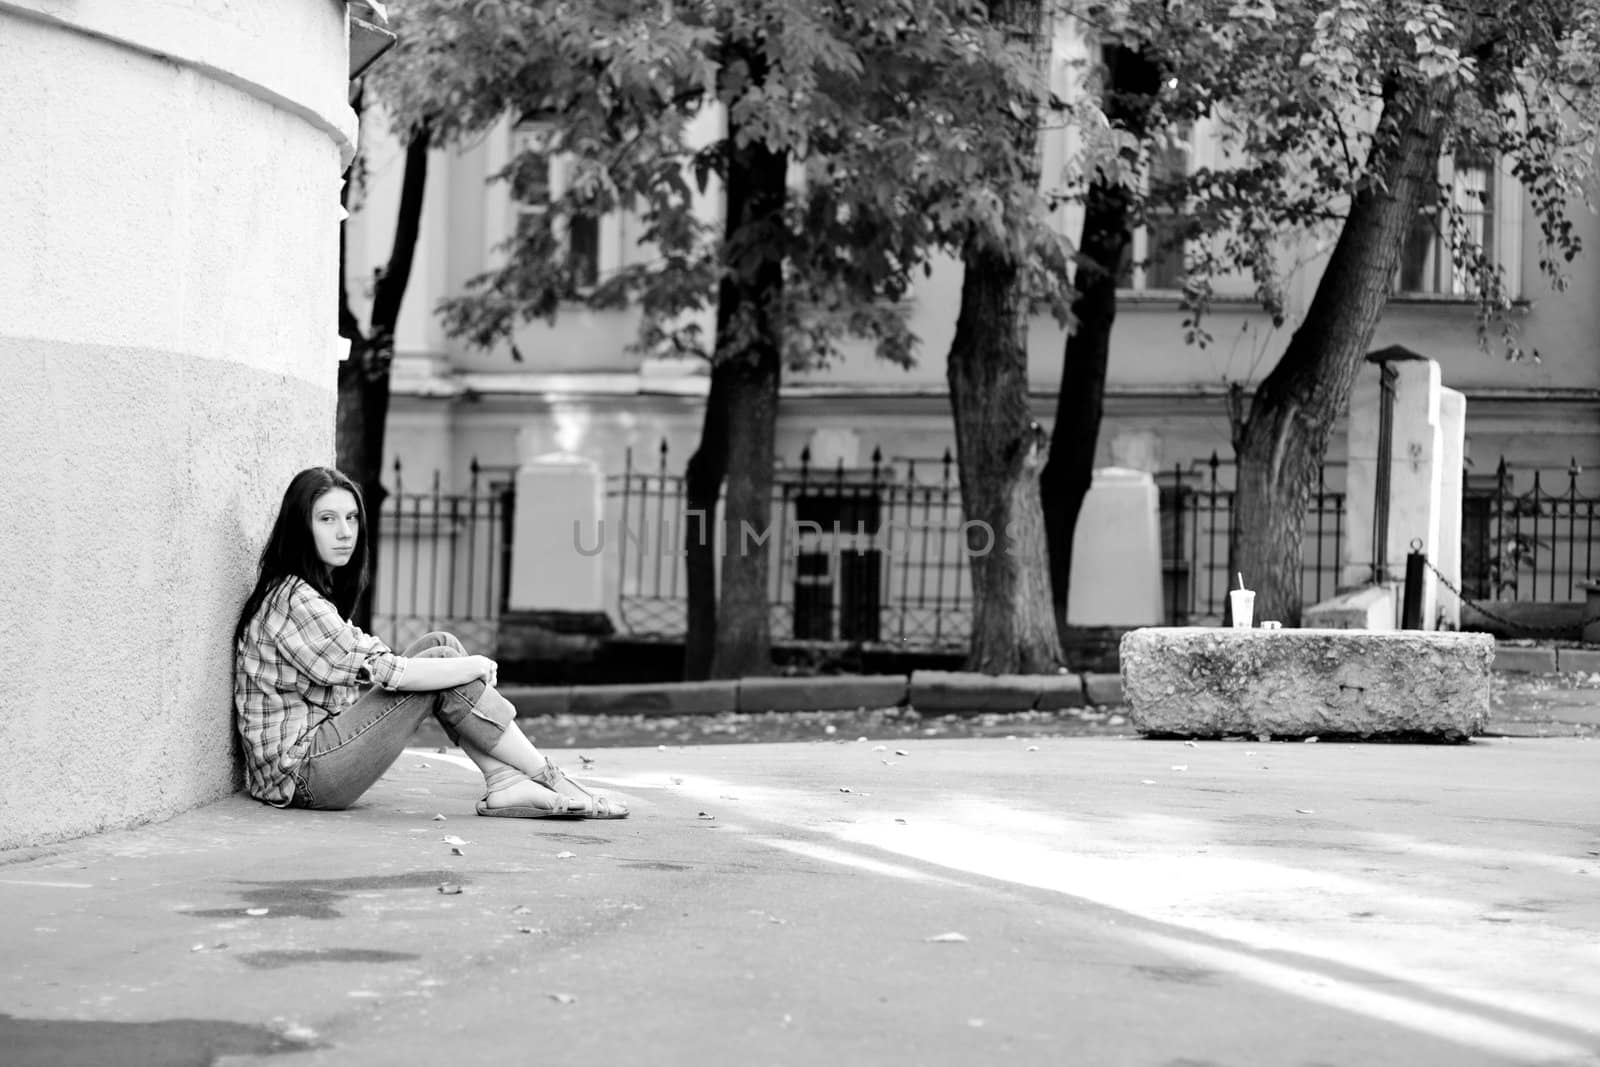 Girl sitting on asphalt near wall
